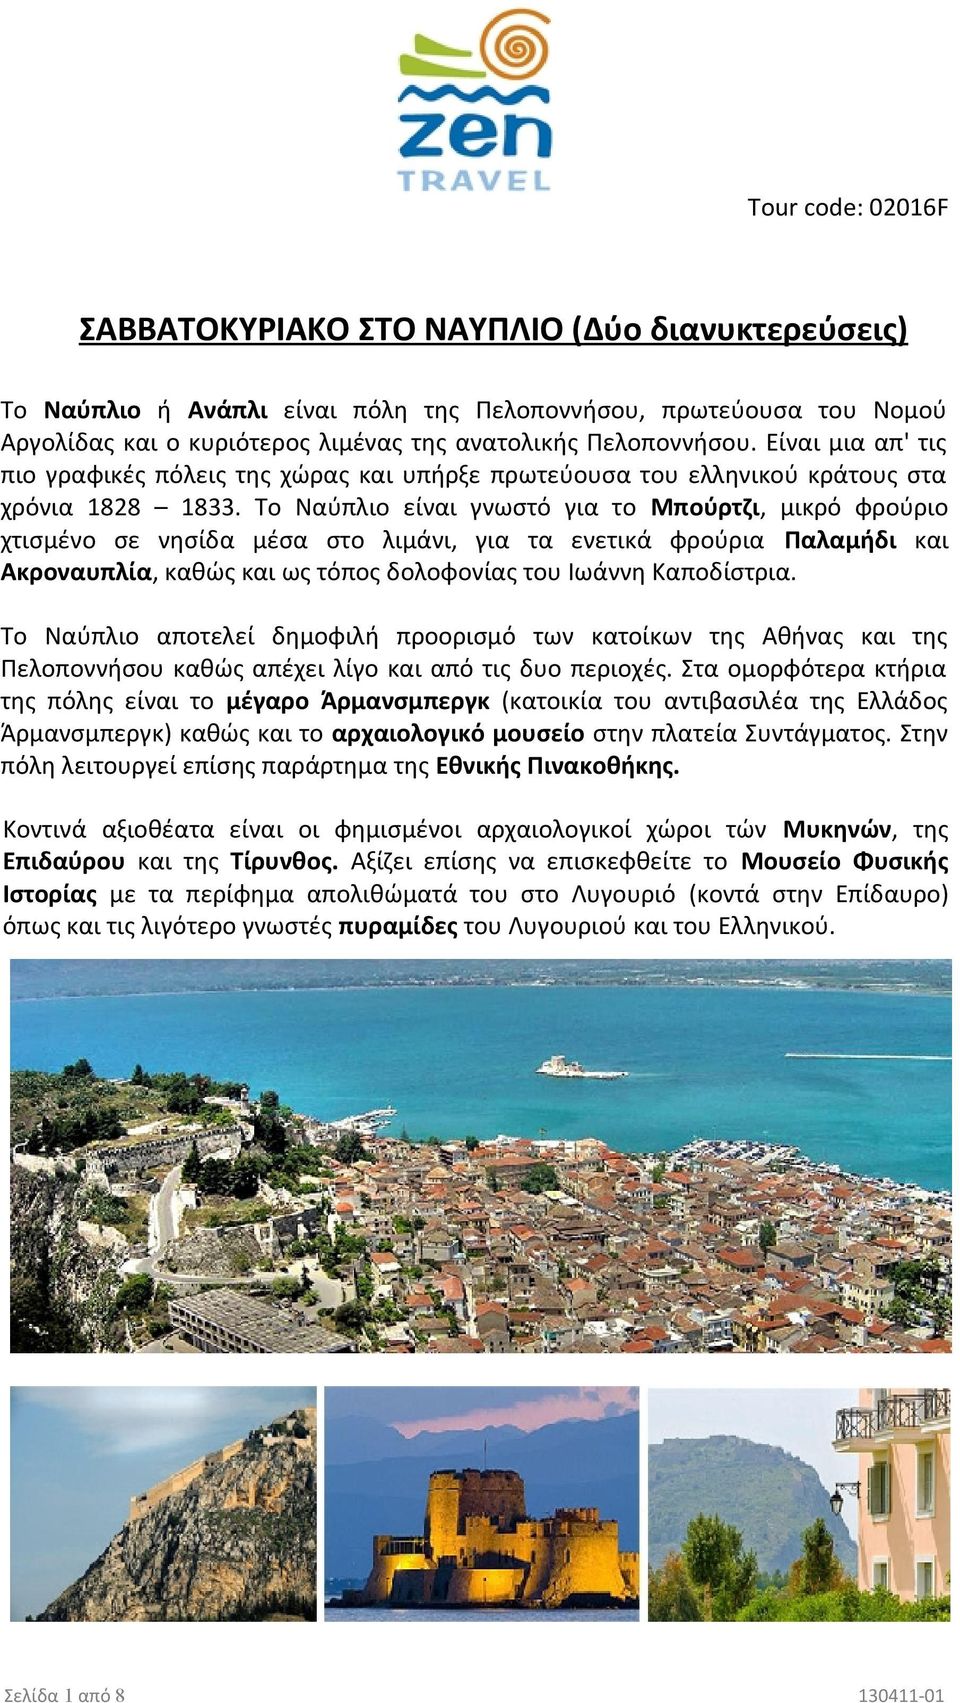 Το Ναύπλιο είναι γνωστό για το Μπούρτζι, μικρό φρούριο χτισμένο σε νησίδα μέσα στο λιμάνι, για τα ενετικά φρούρια Παλαμήδι και Ακροναυπλία, καθώς και ως τόπος δολοφονίας του Ιωάννη Καποδίστρια.